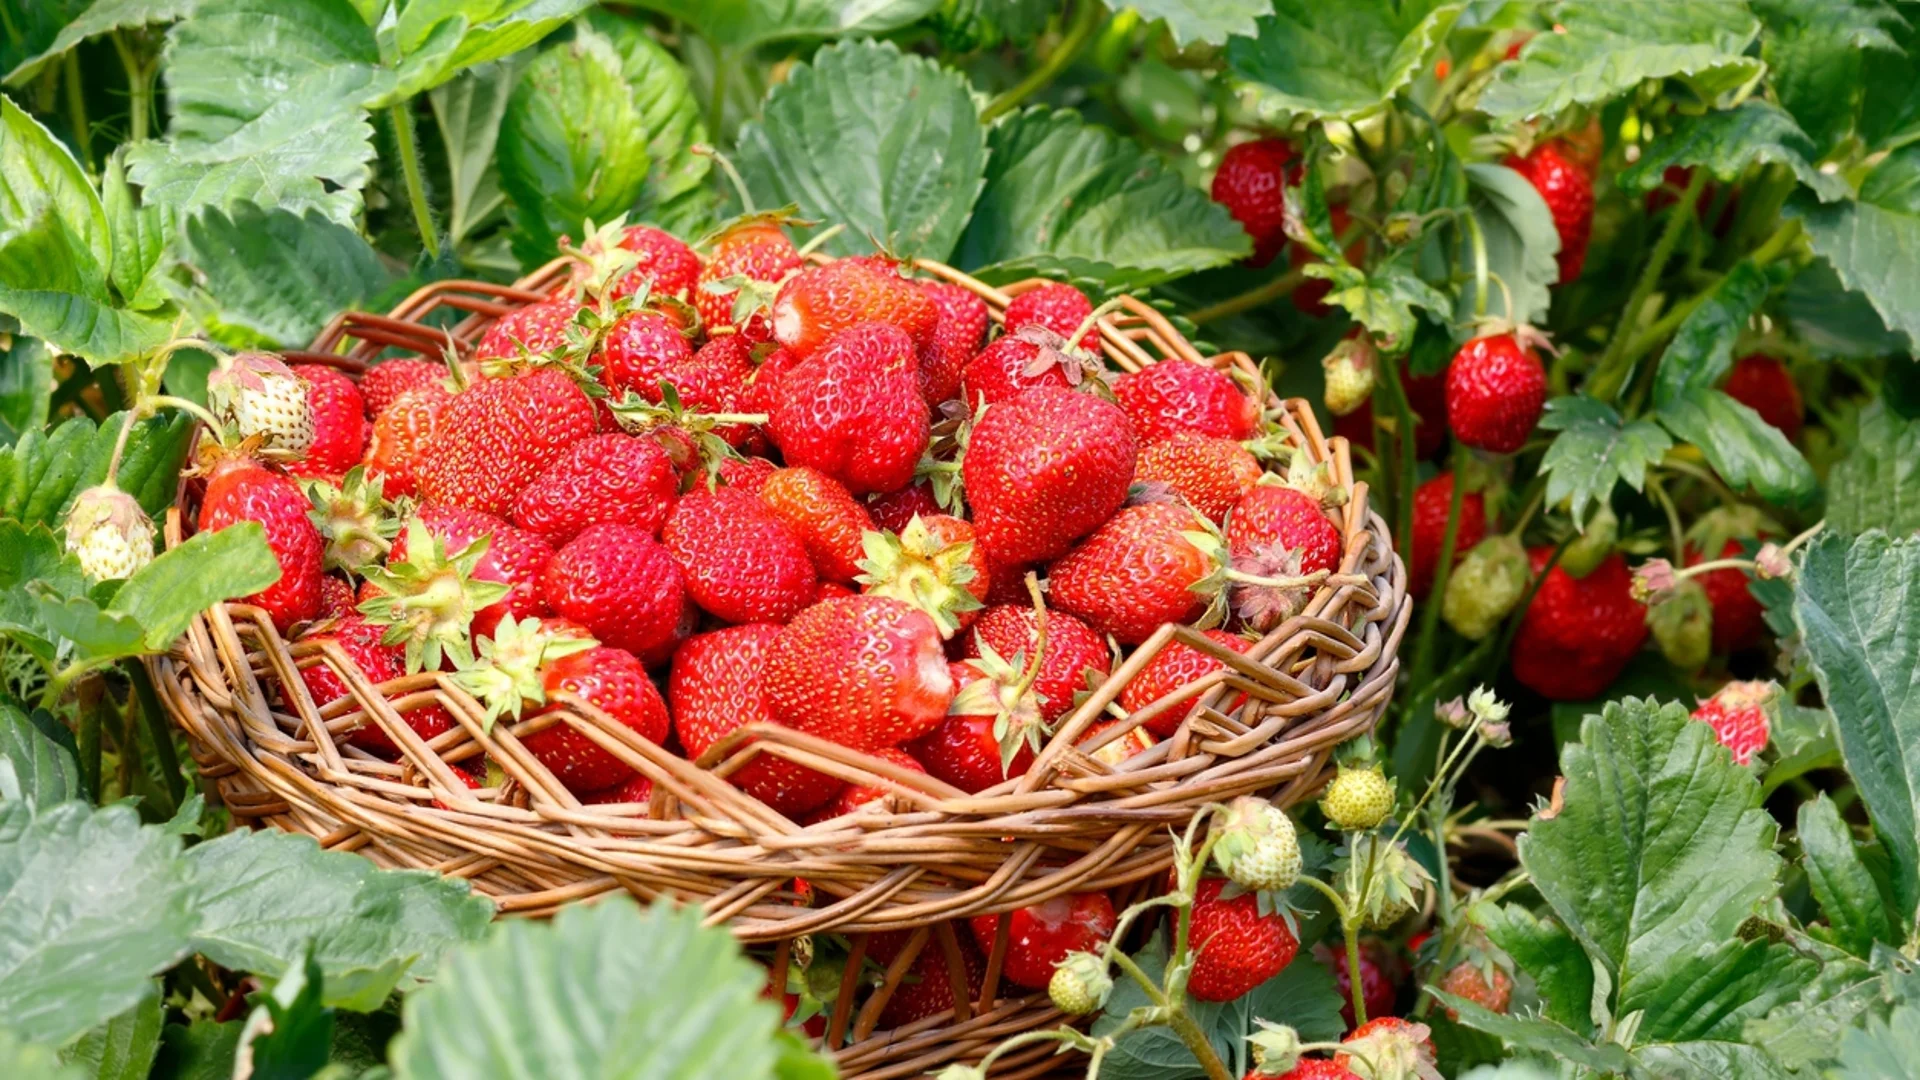 Правила за торене на ягоди, които растат на едно място в продължение на много години